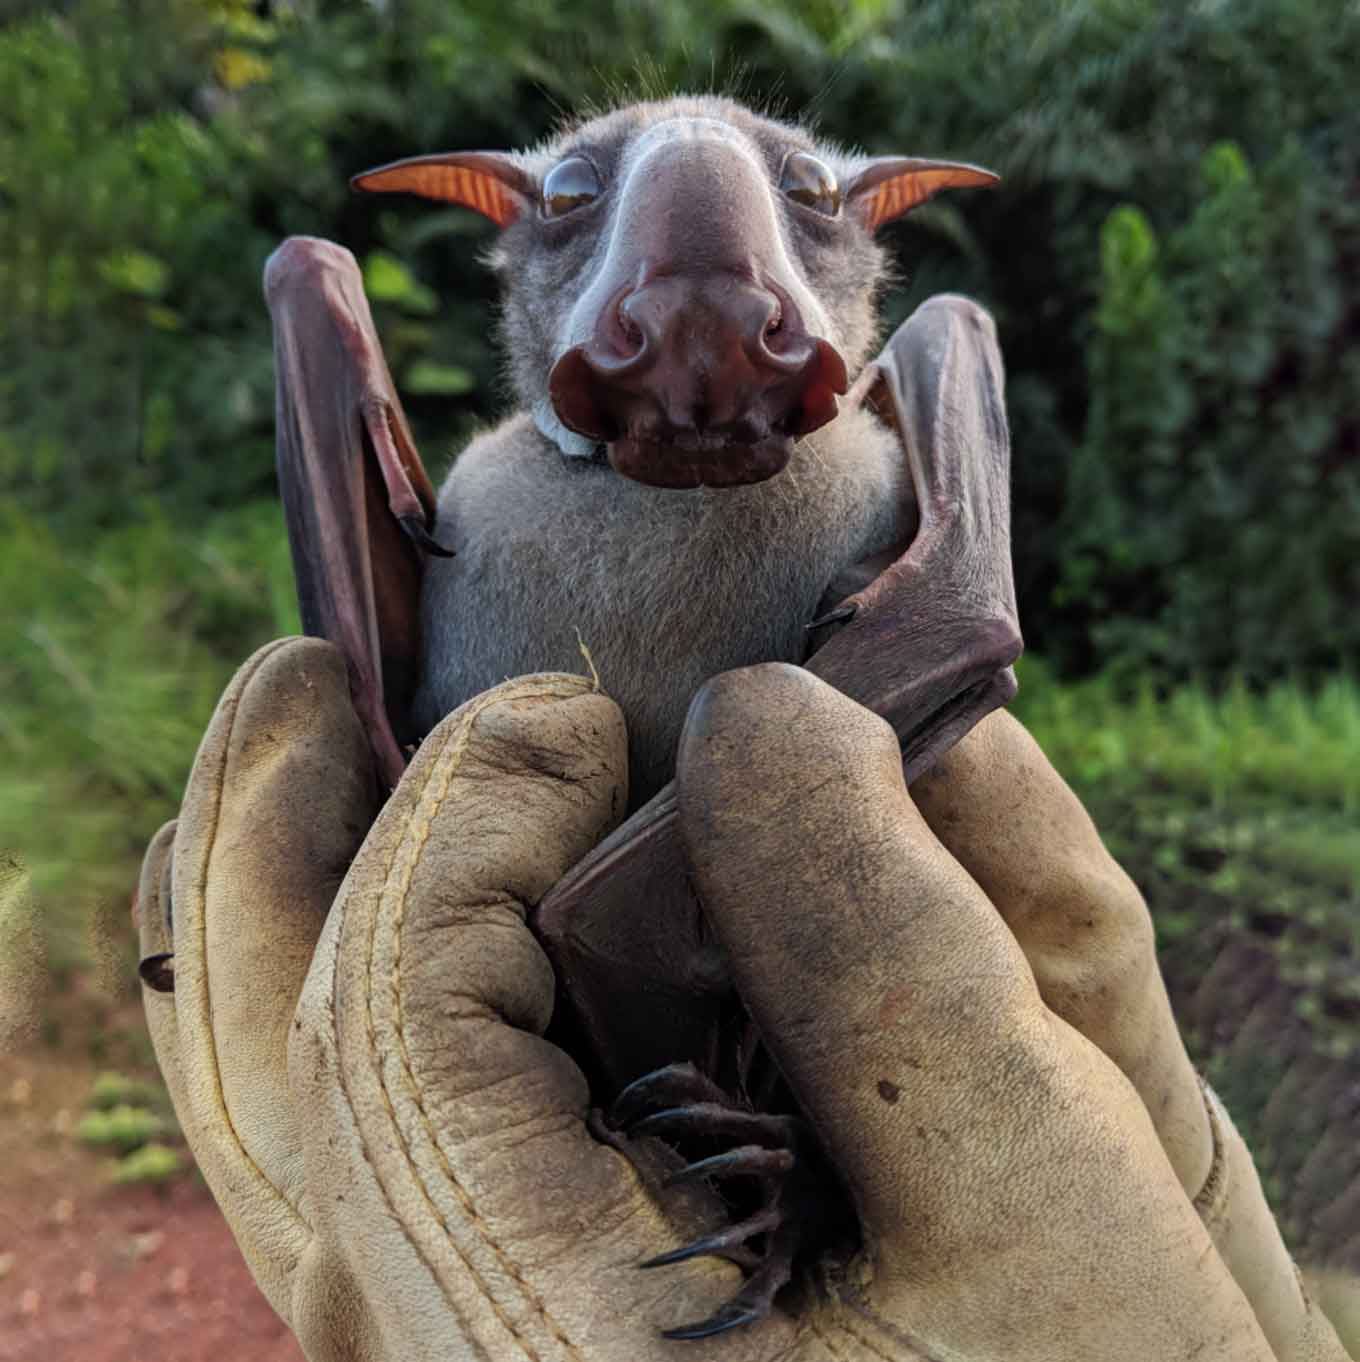 Hammer-headed Bat being held